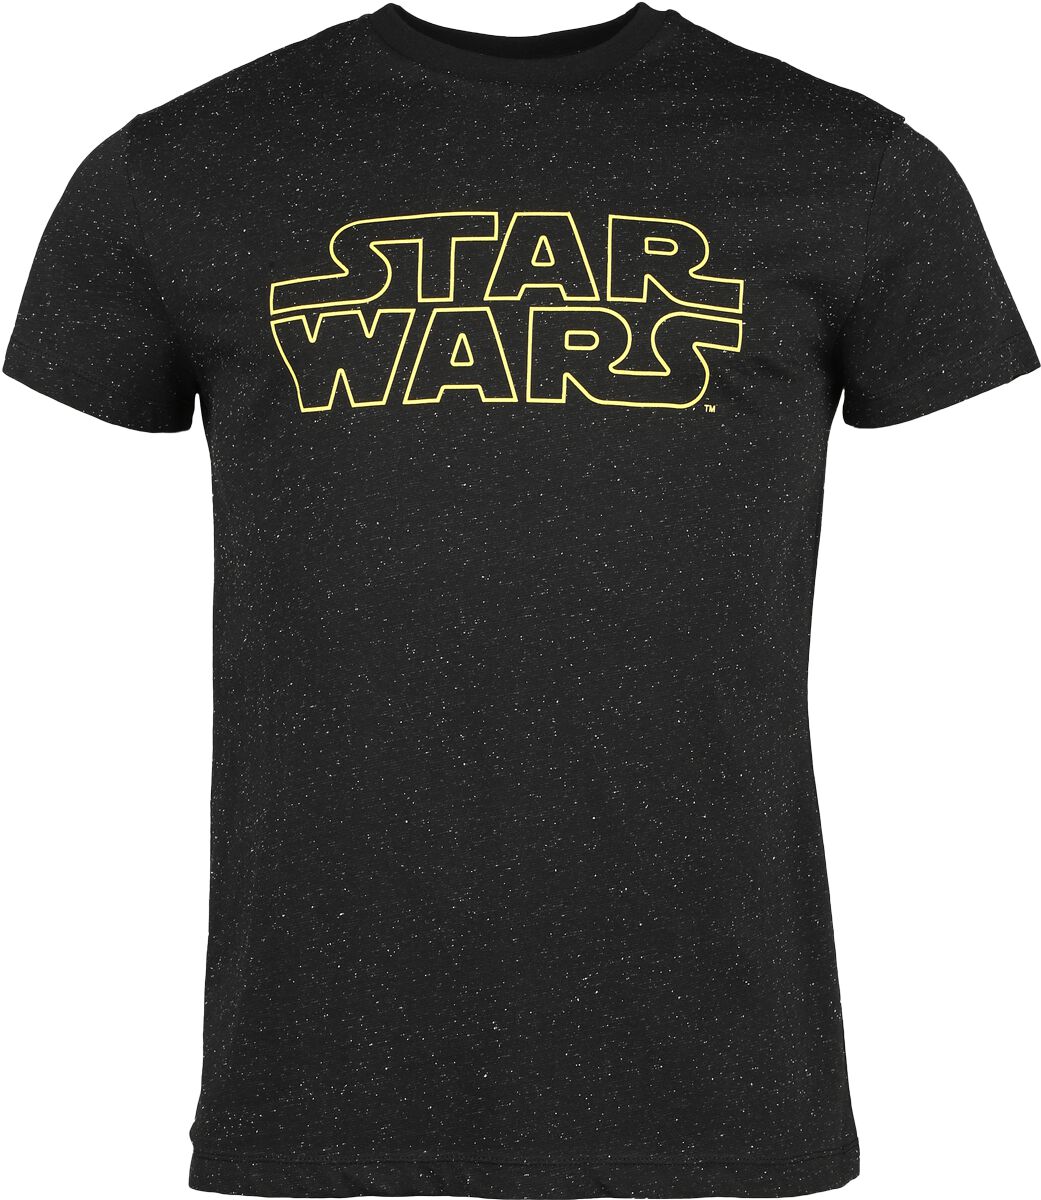 Star Wars Star Wars - Galaxy T-Shirt schwarz in M